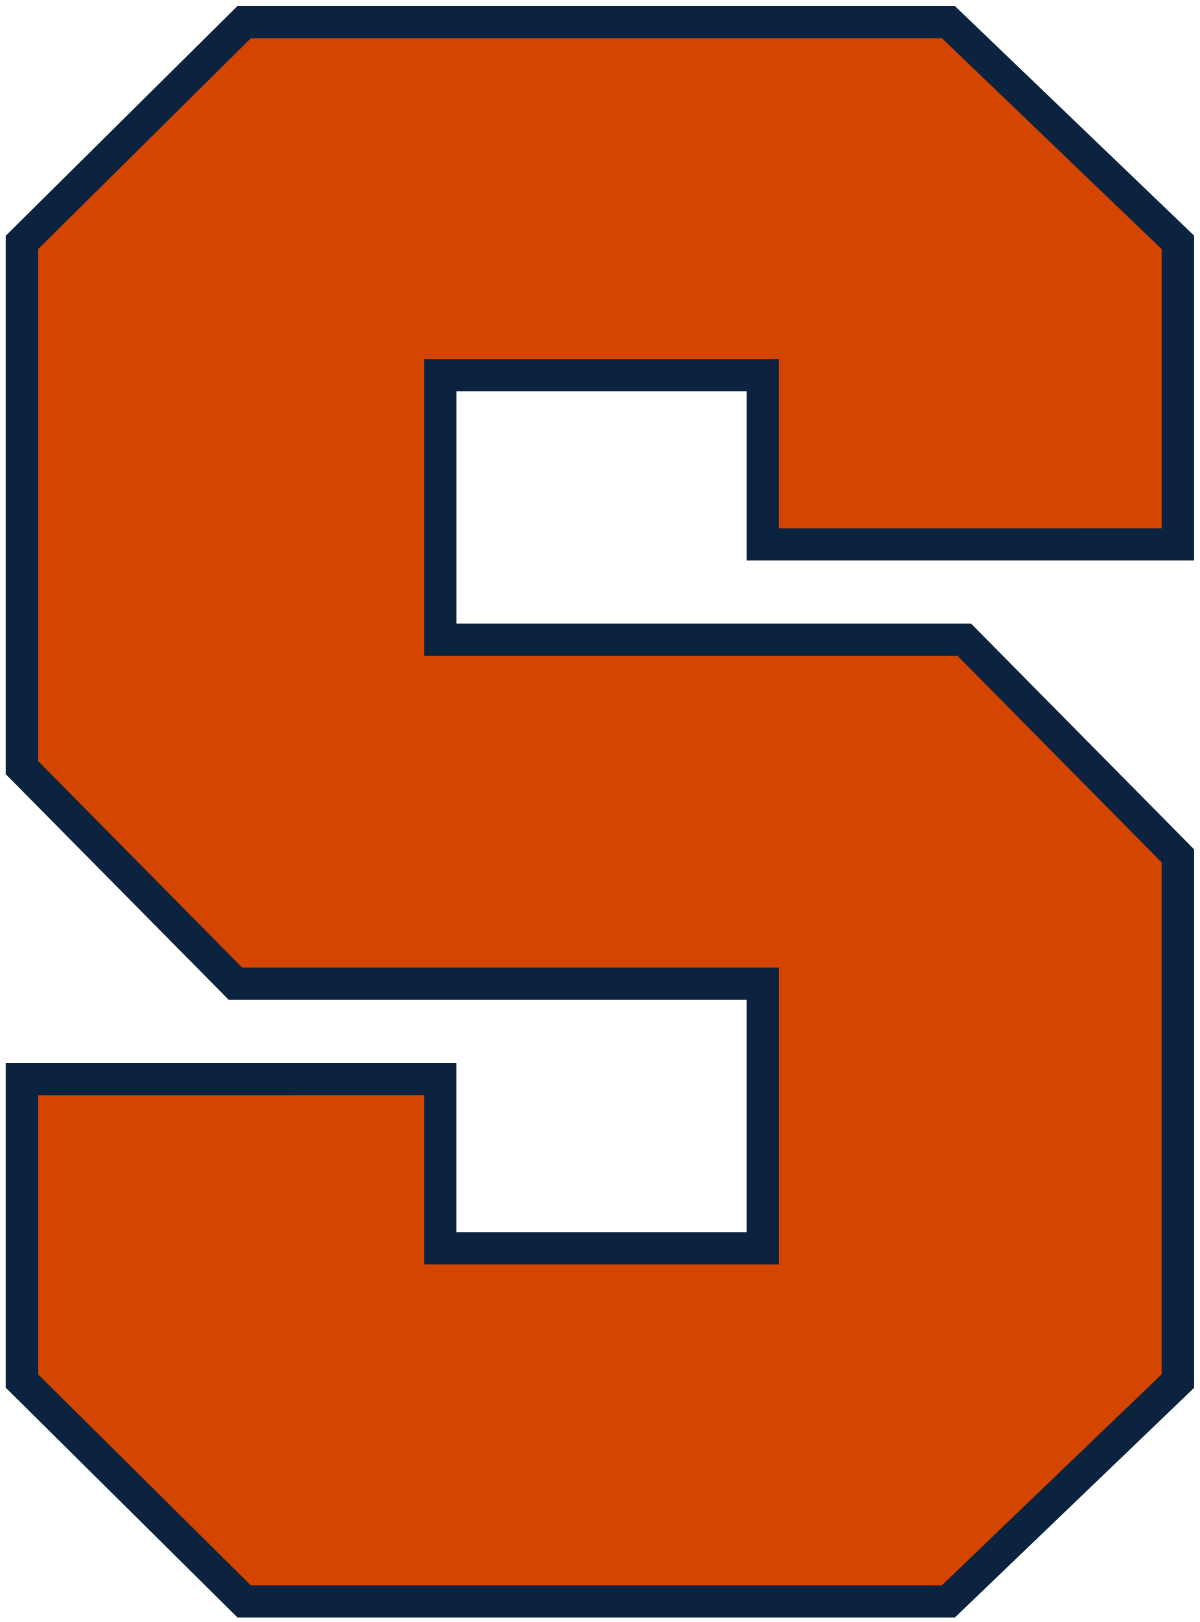 Syracuse's Logo - Syracuse Orange football